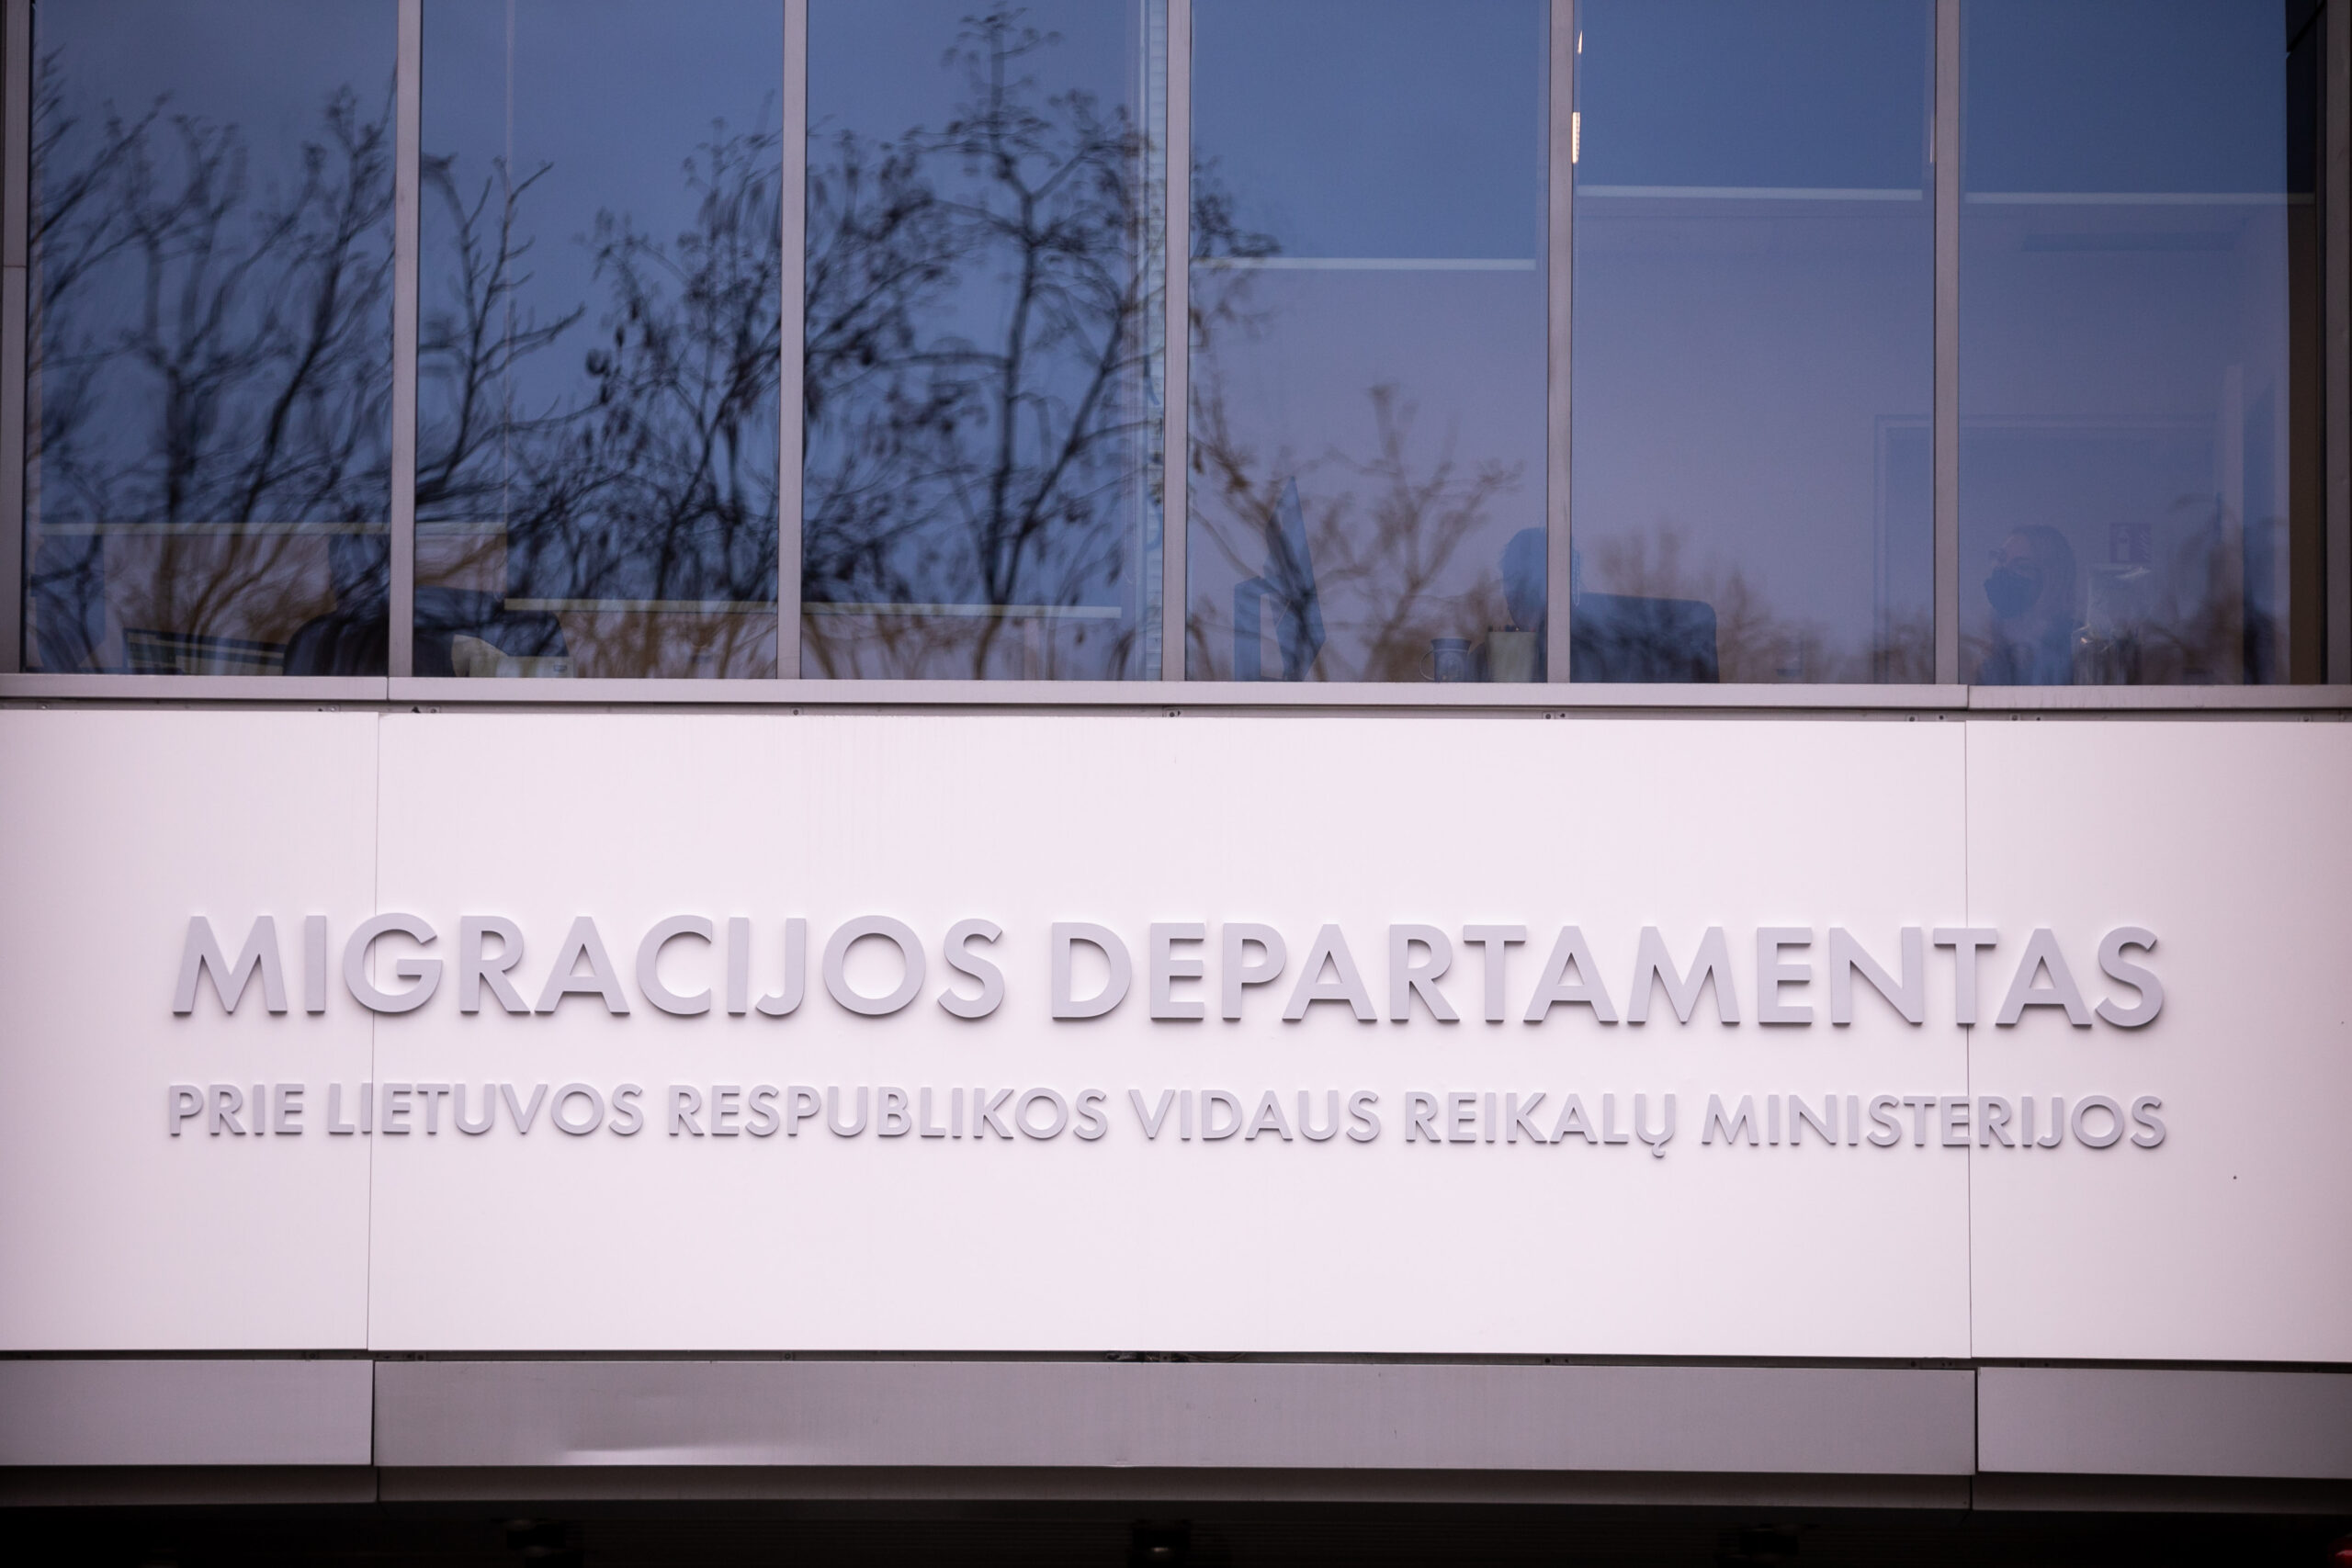 Заявление на временное проживание заполняется в отделениях Департамента миграции